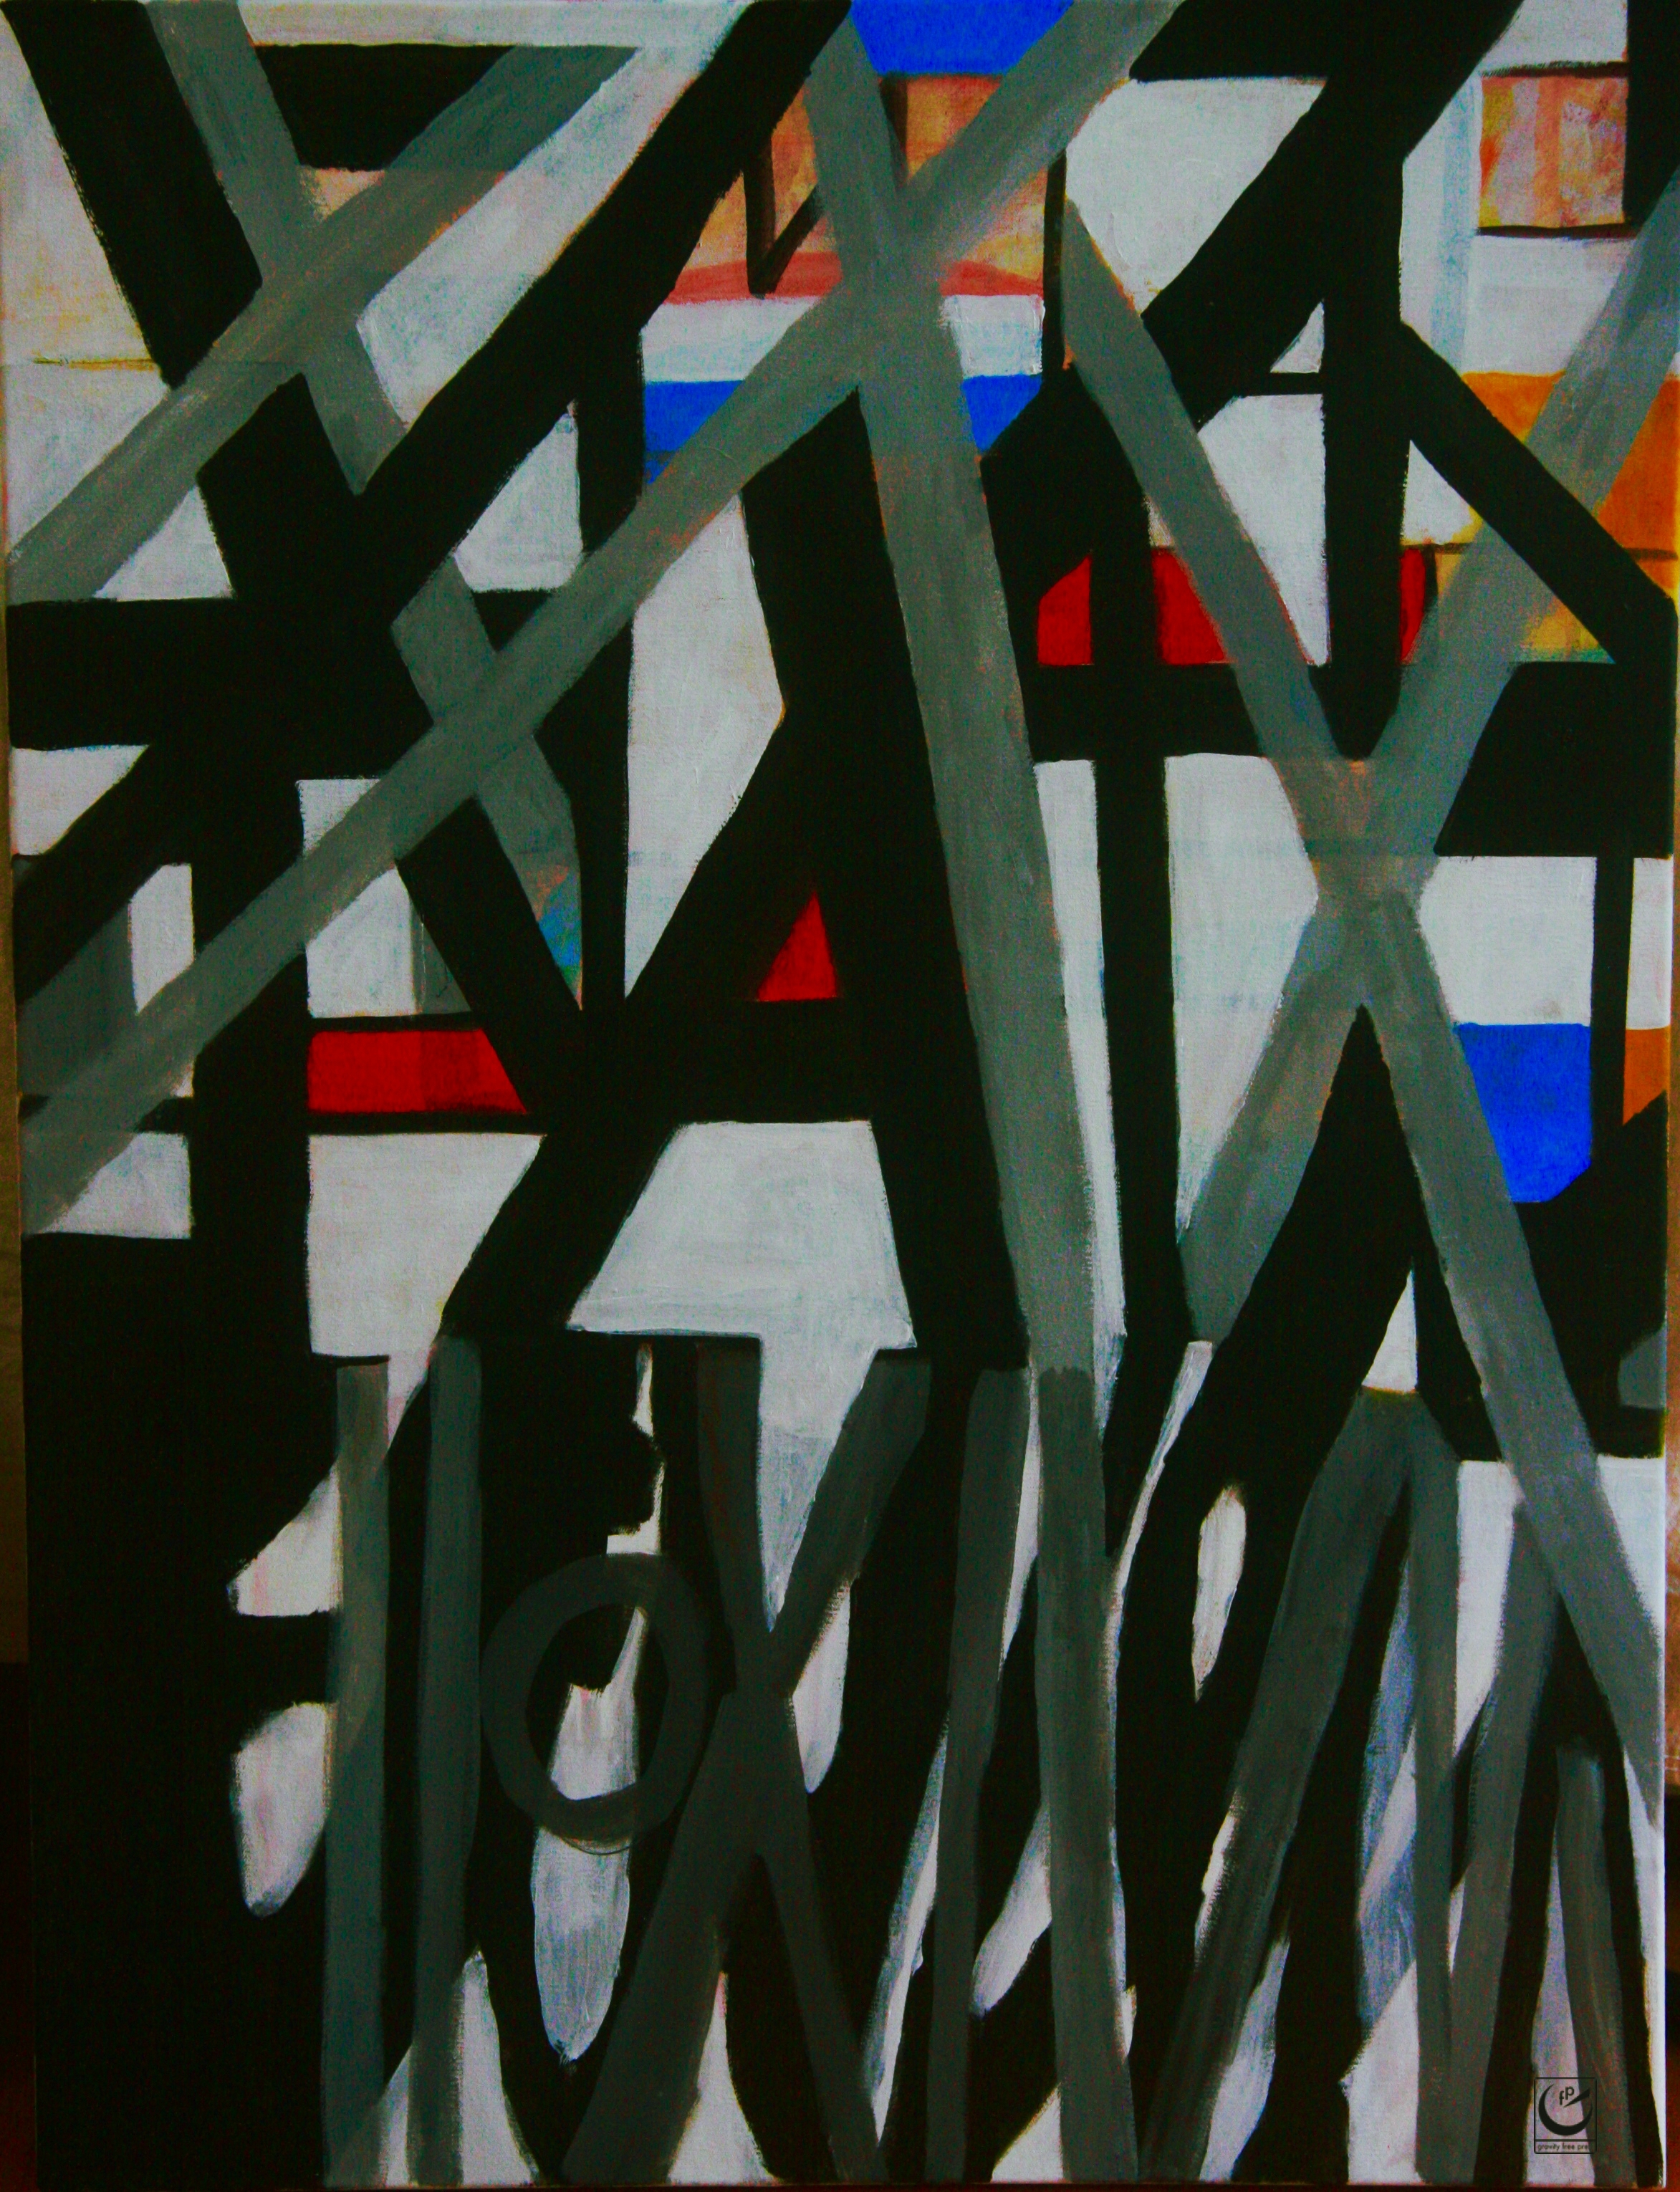 For Mondrian, 2017.  Acrylic on canvas, 40" x 30"